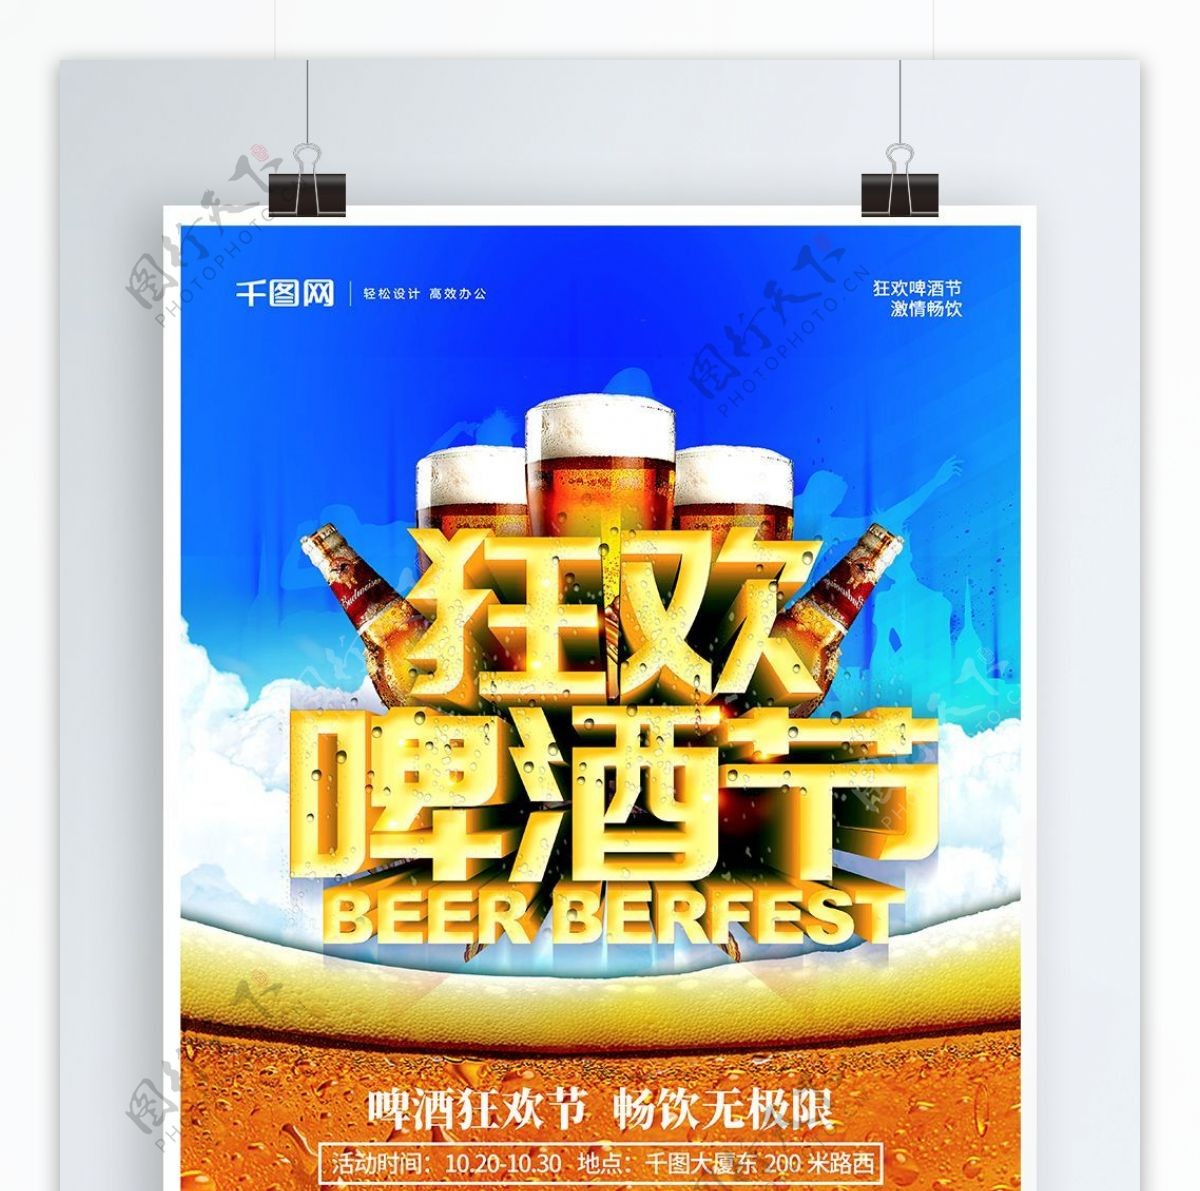 立体字狂欢啤酒节海报